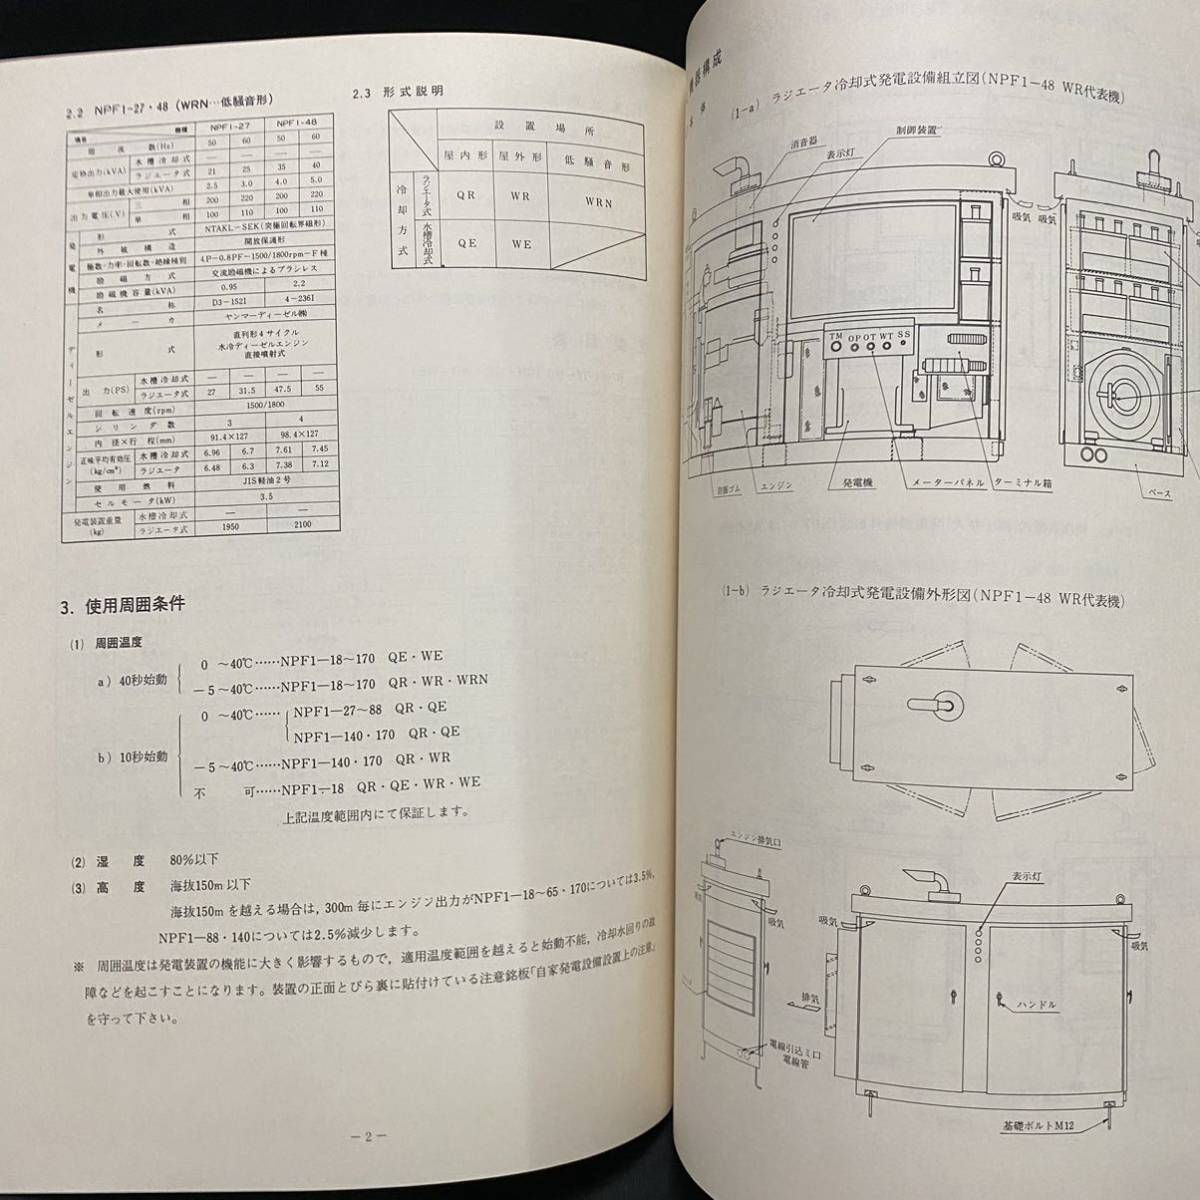 東芝電材 東芝非常用自家発電設備 NPF1シリーズ取扱説明書 昭和50年代